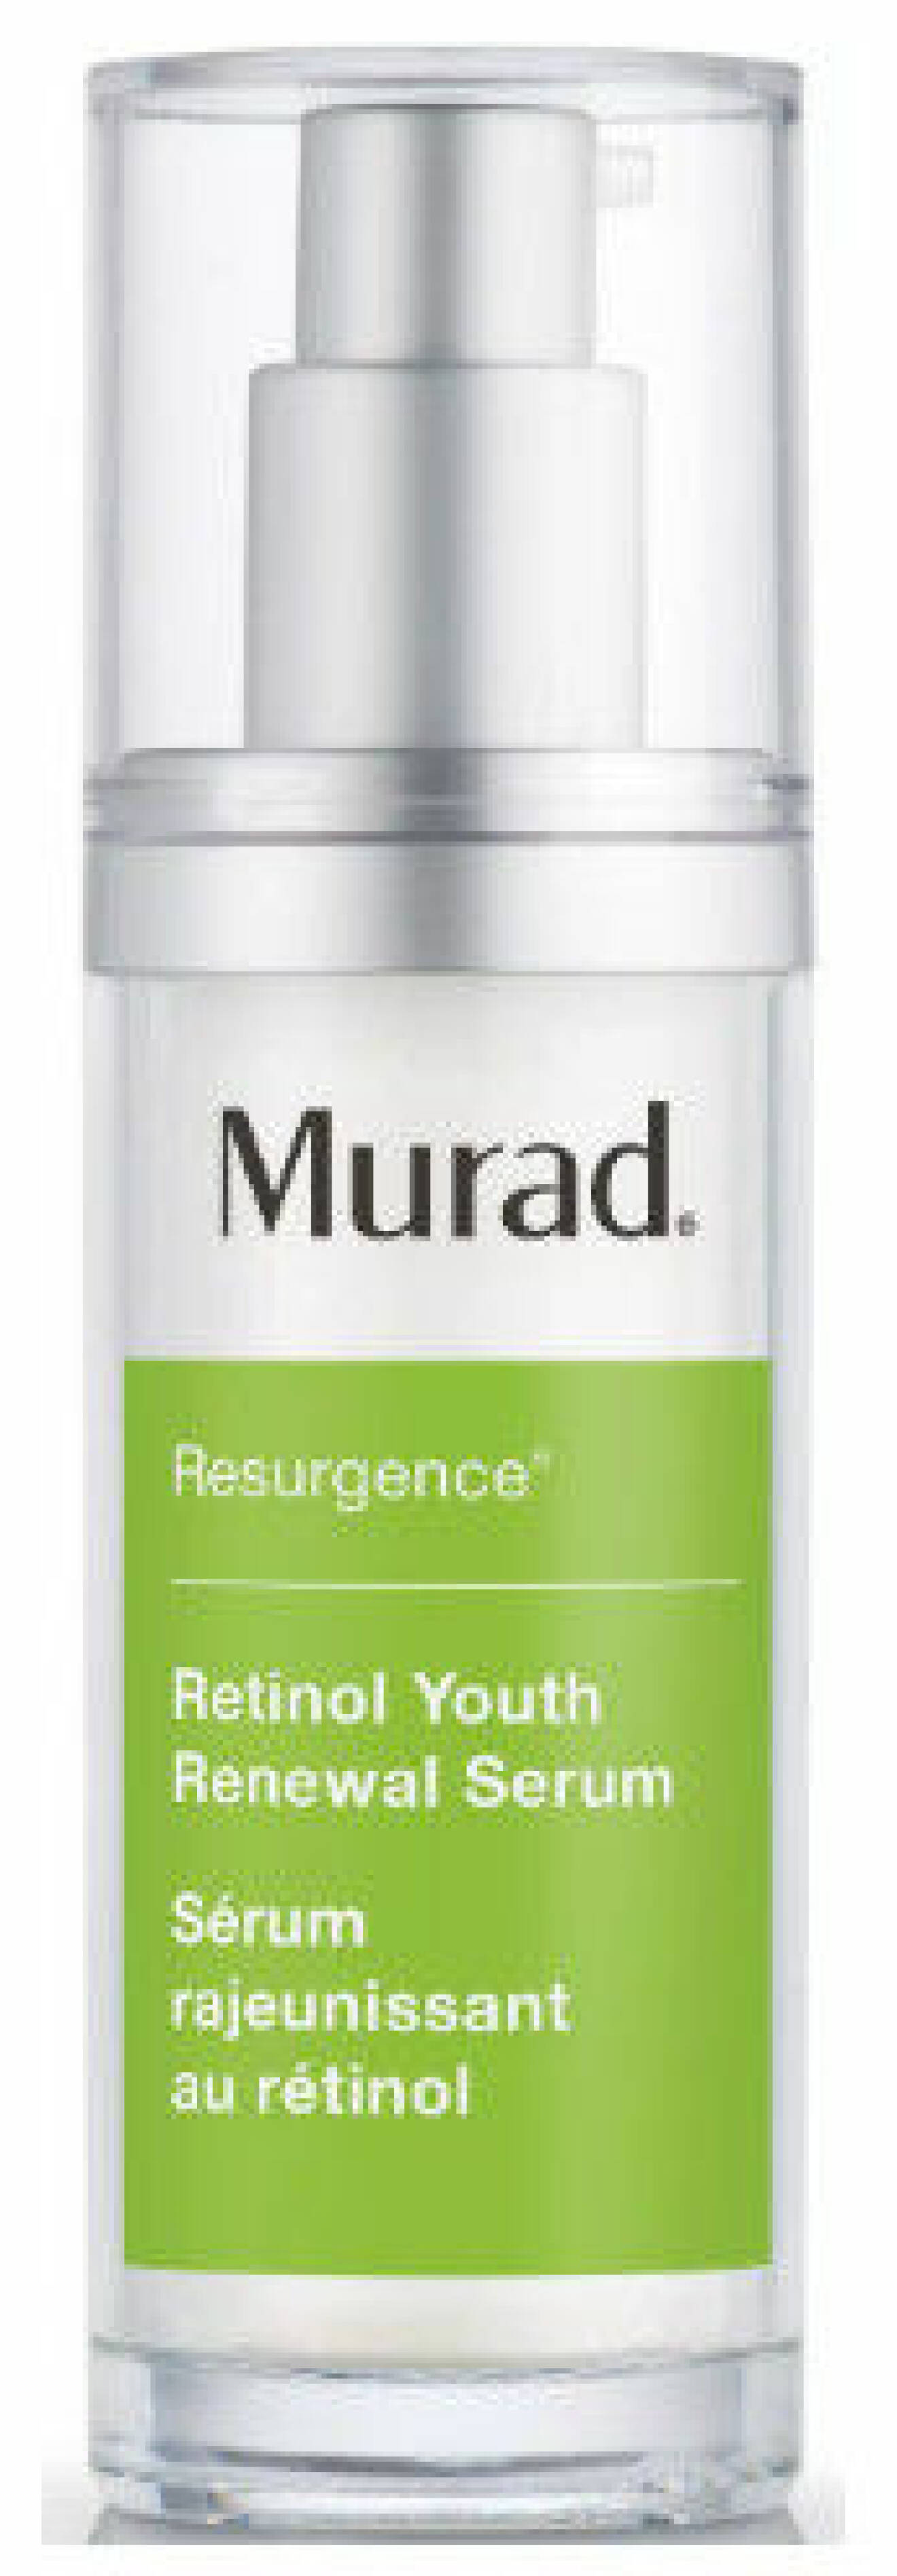 Murad retinol serum.